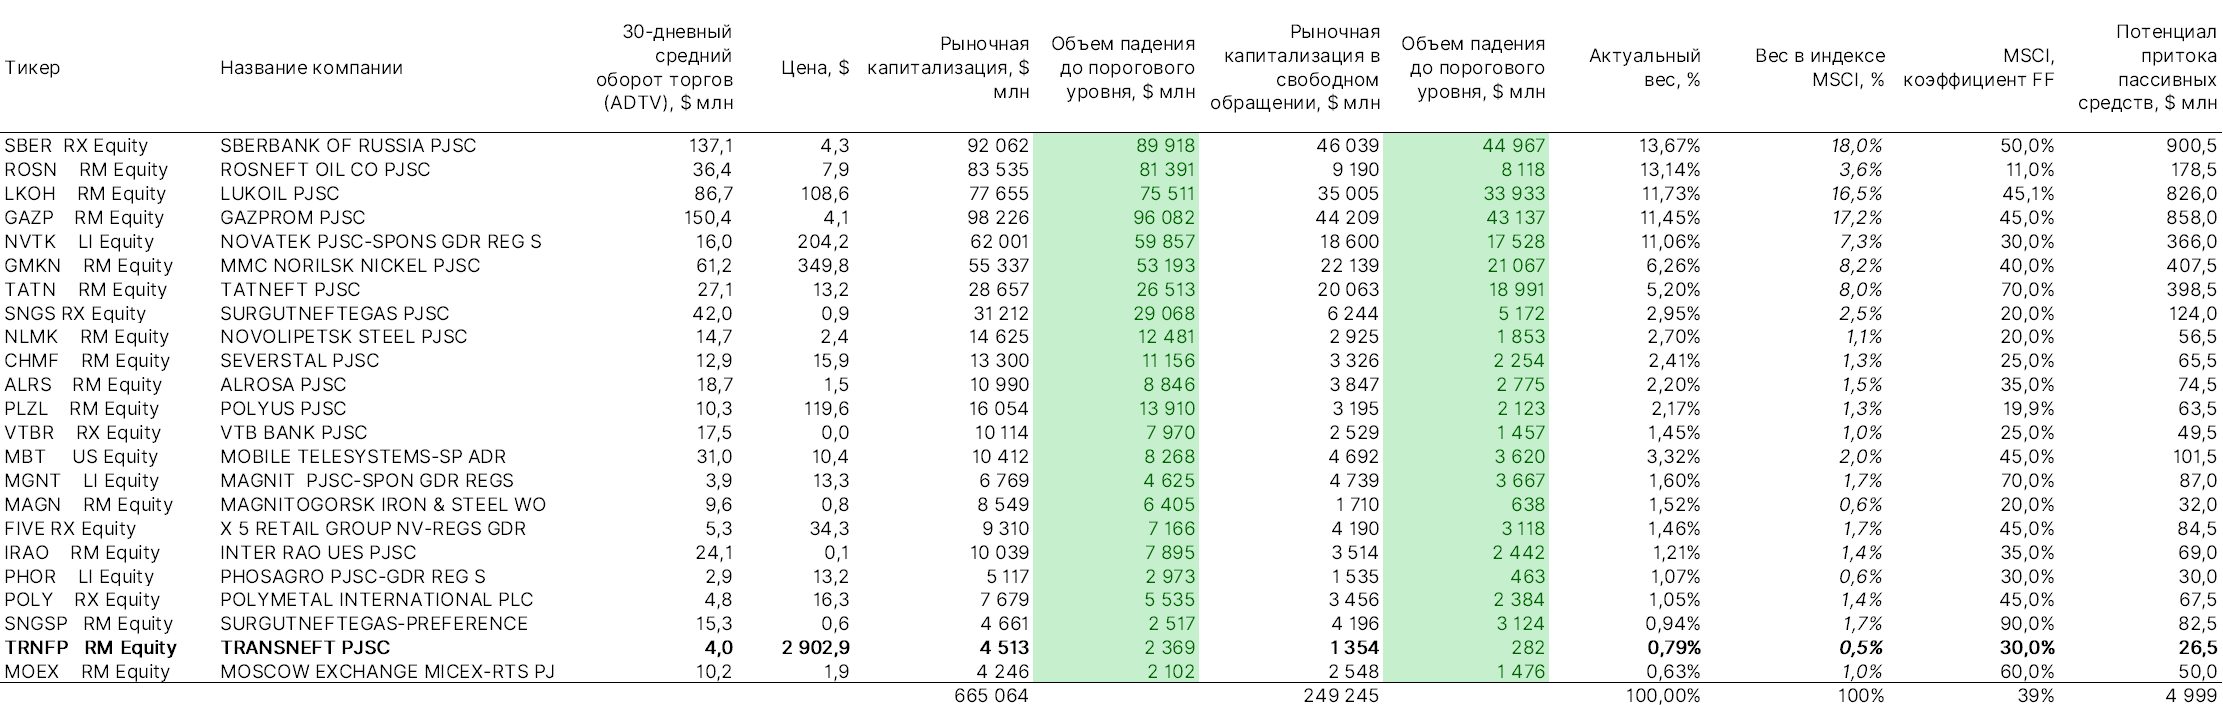 Аналитическая таблица MSCI Russia